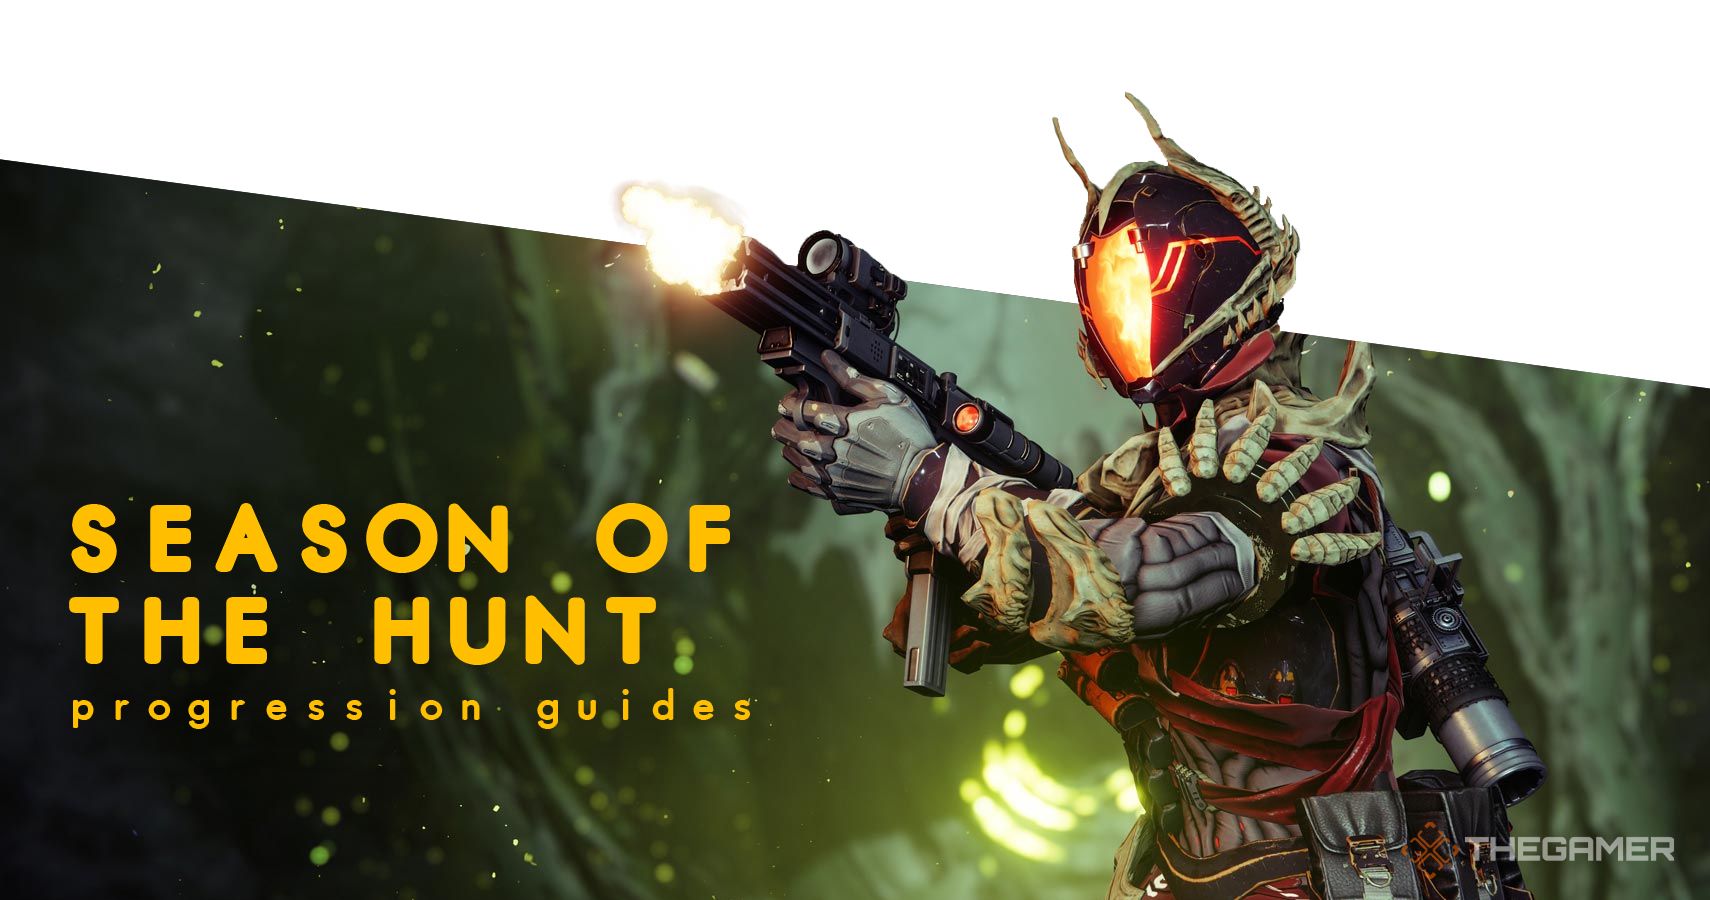 Destiny 2 Season of the Hunt progression guides